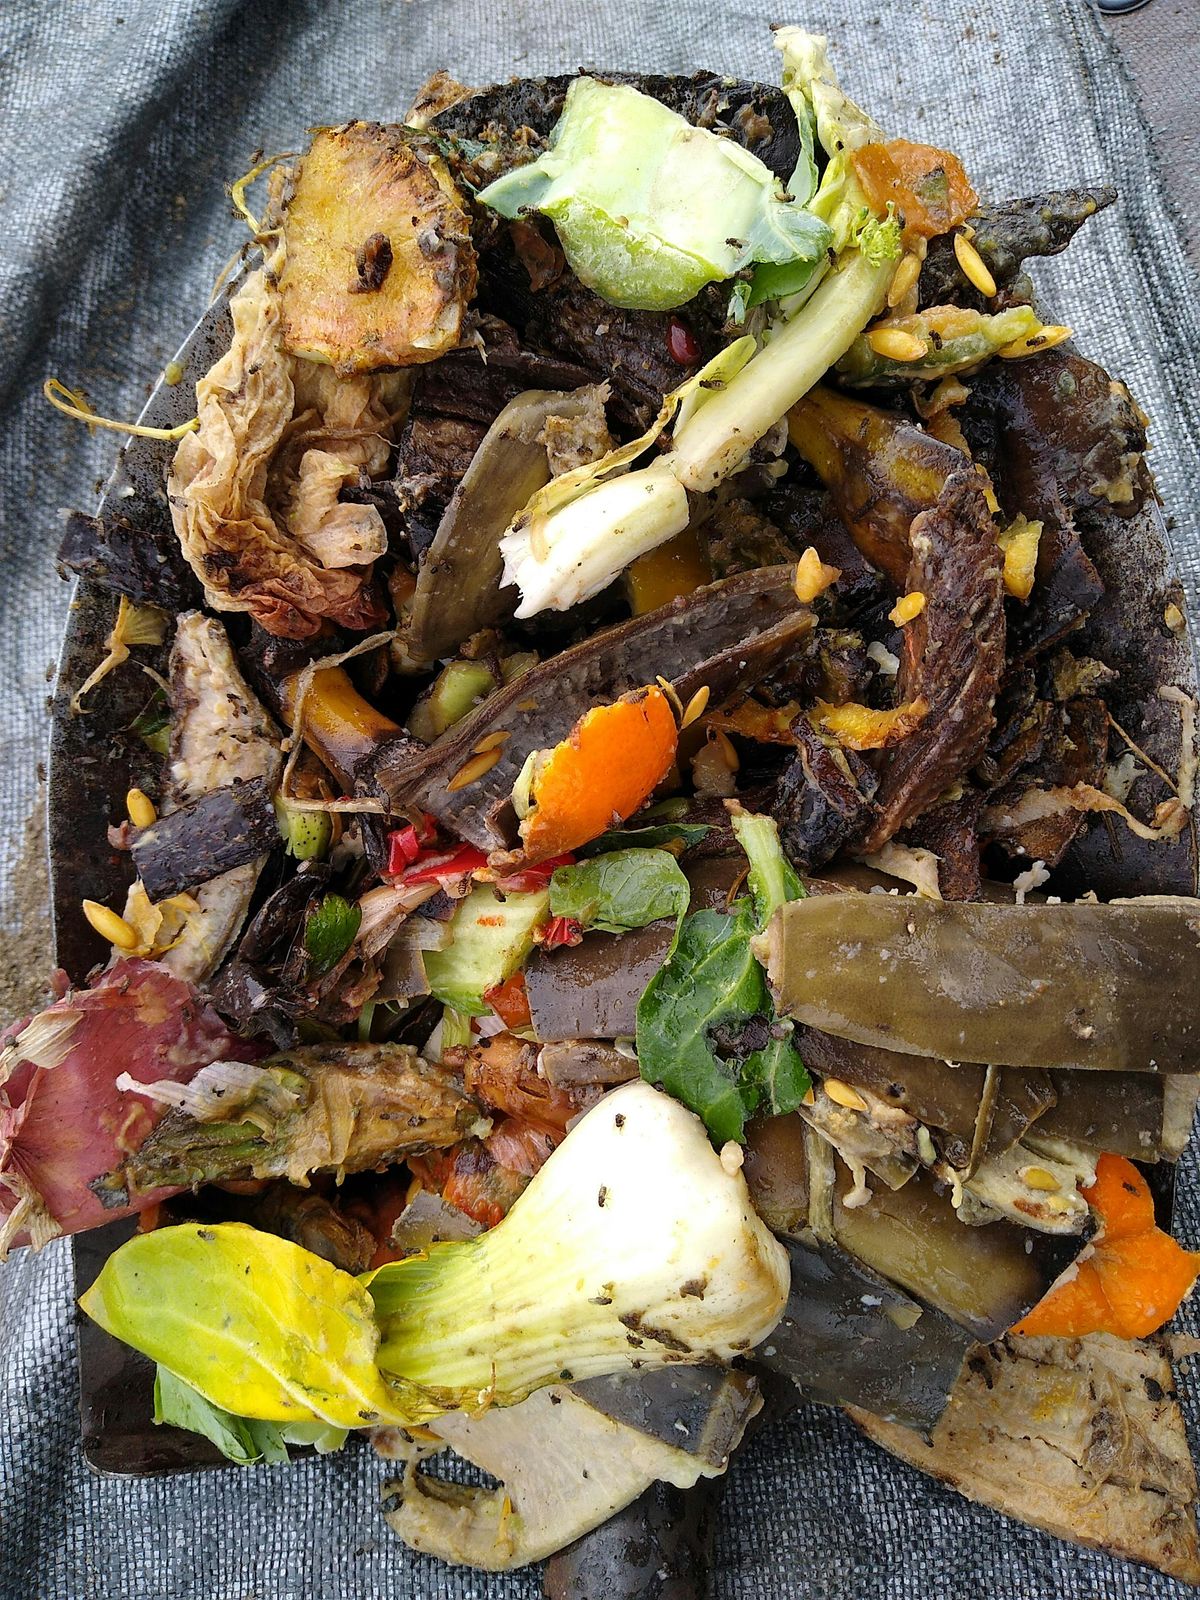 Wyckoff Farm Community Compost Giveback